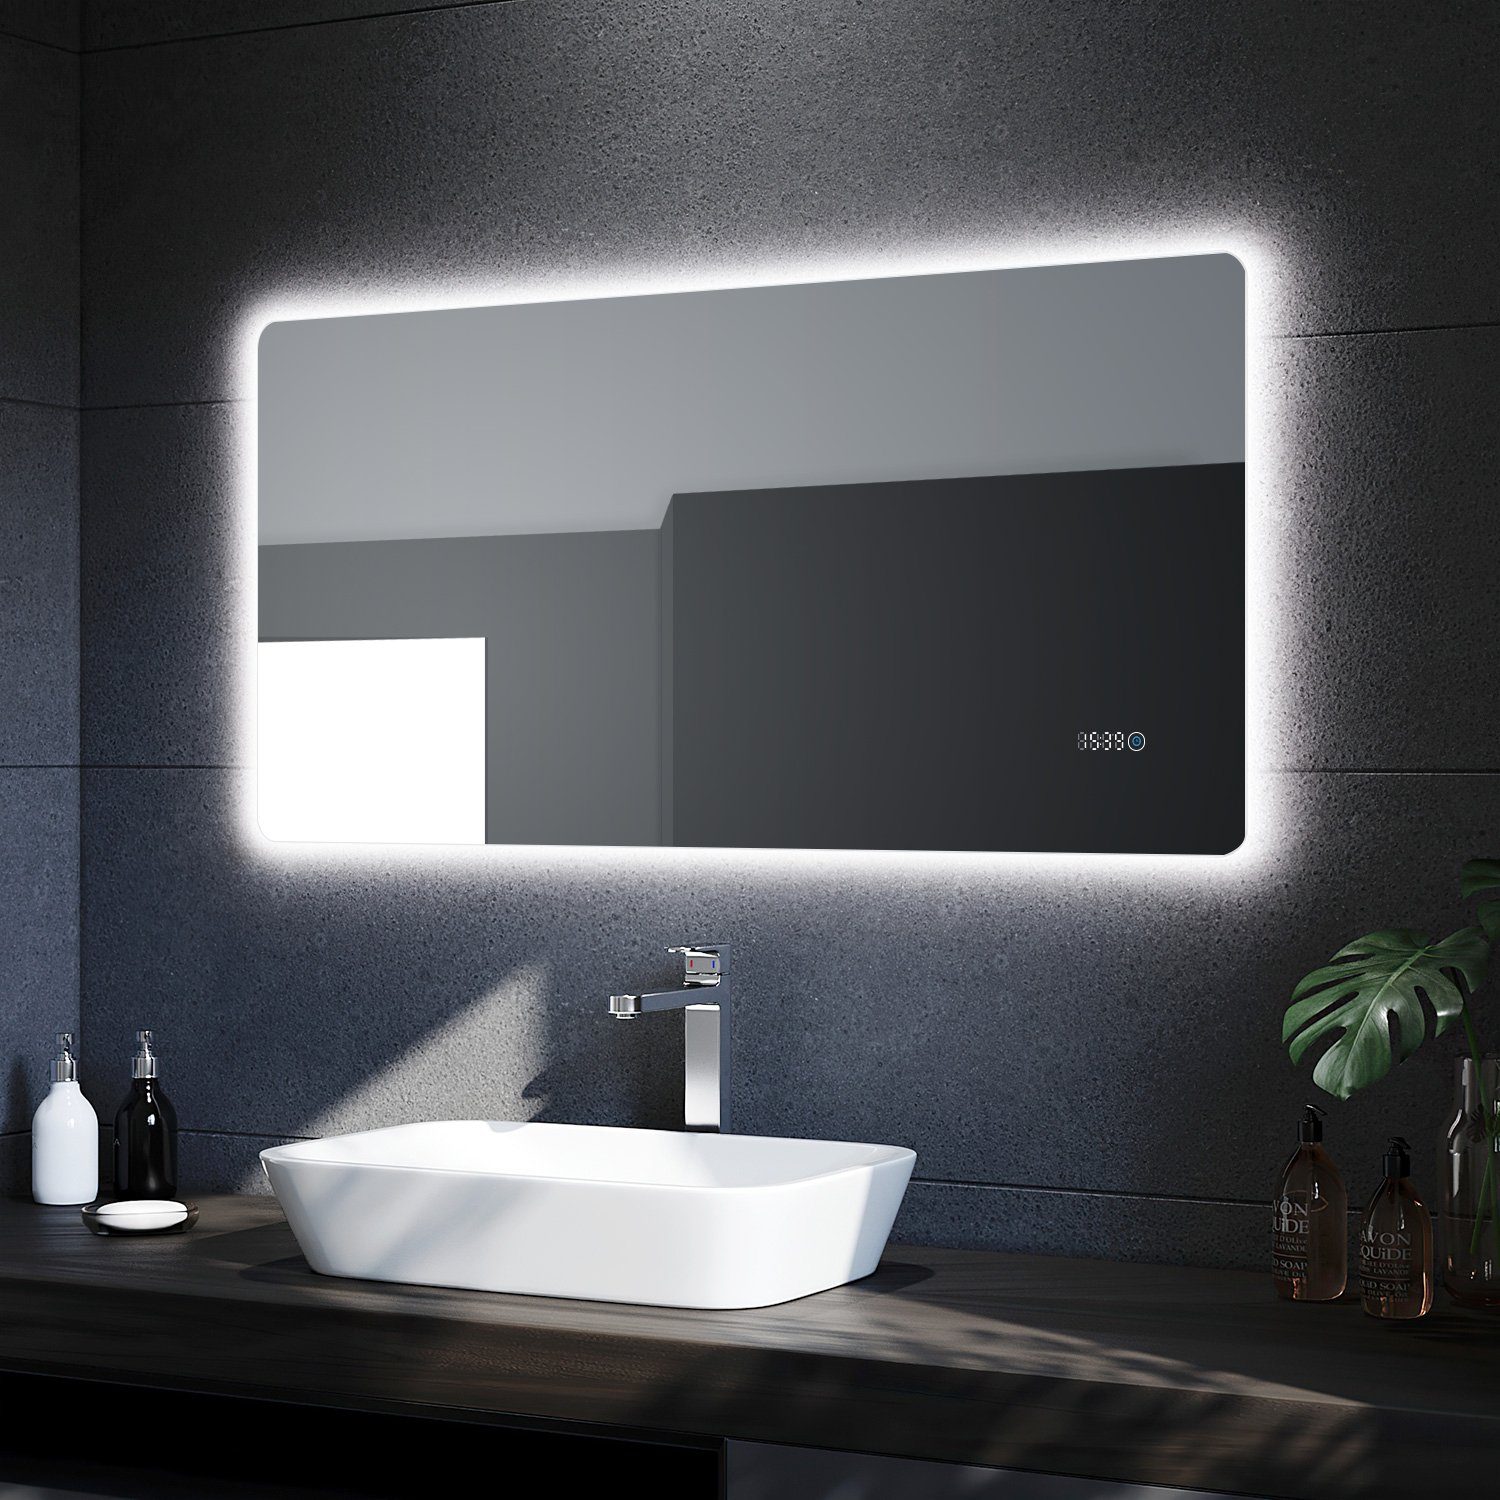 SONNI Badspiegel »Badspiegel mit LED Uhr Temperaturanzeige 120x60 cm  Badezimmerspiegel«, IP44 Energiesparend Wandspiegel mit Beleuchtung  Lichtspiegel